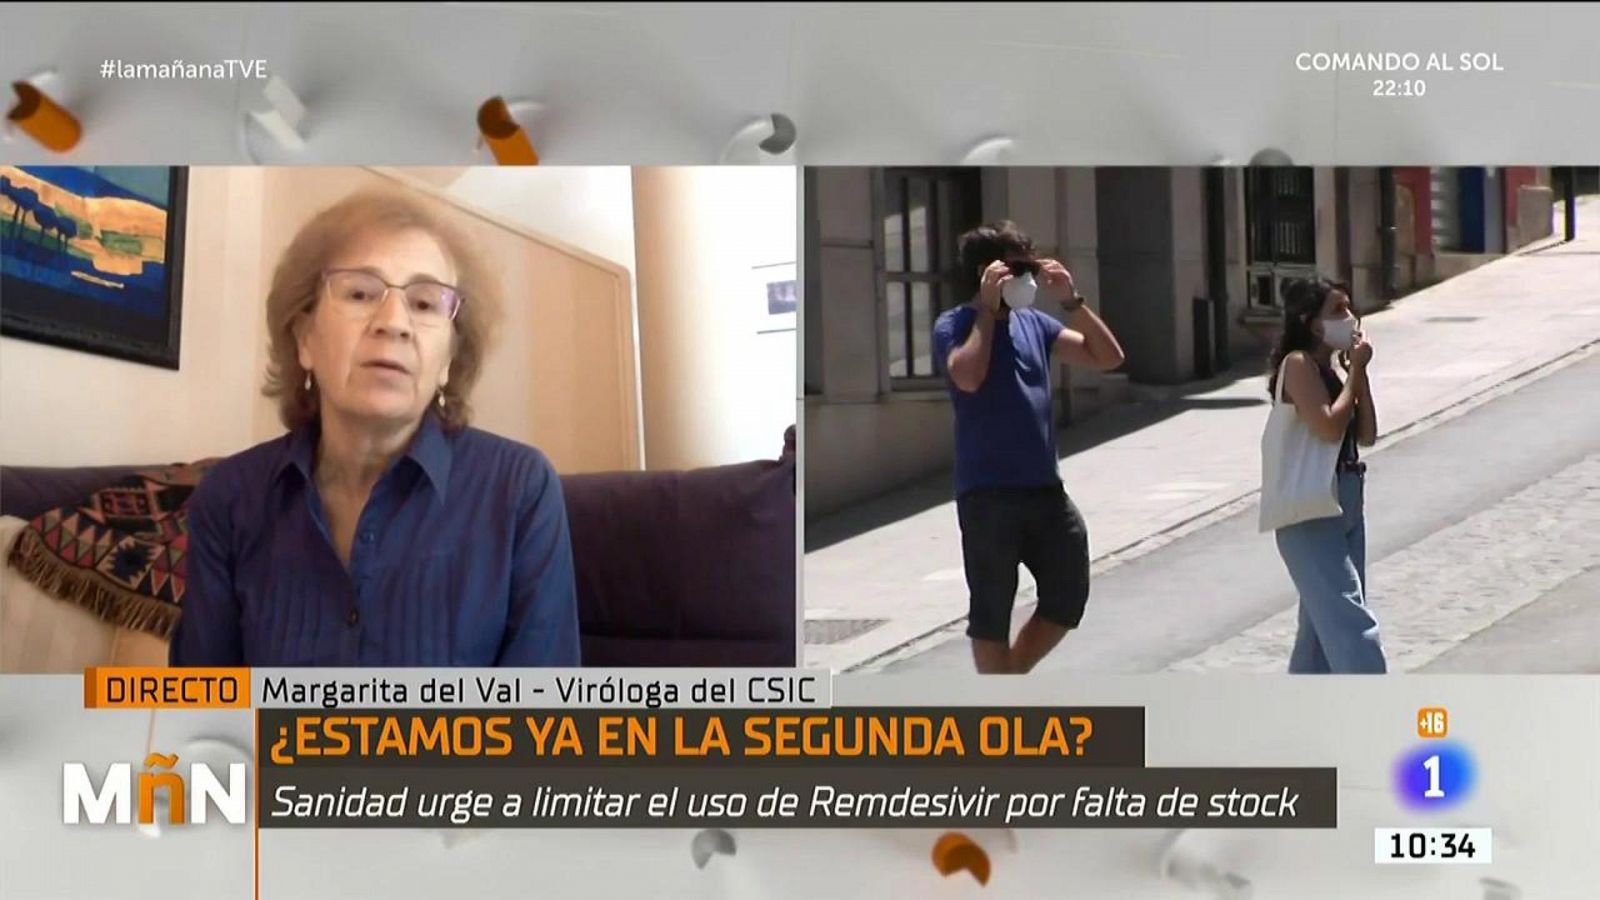 La Mañana - Margarita del Val, viróloga del CSIC: "No nos podemos hacer trampas a nosotros mismos"